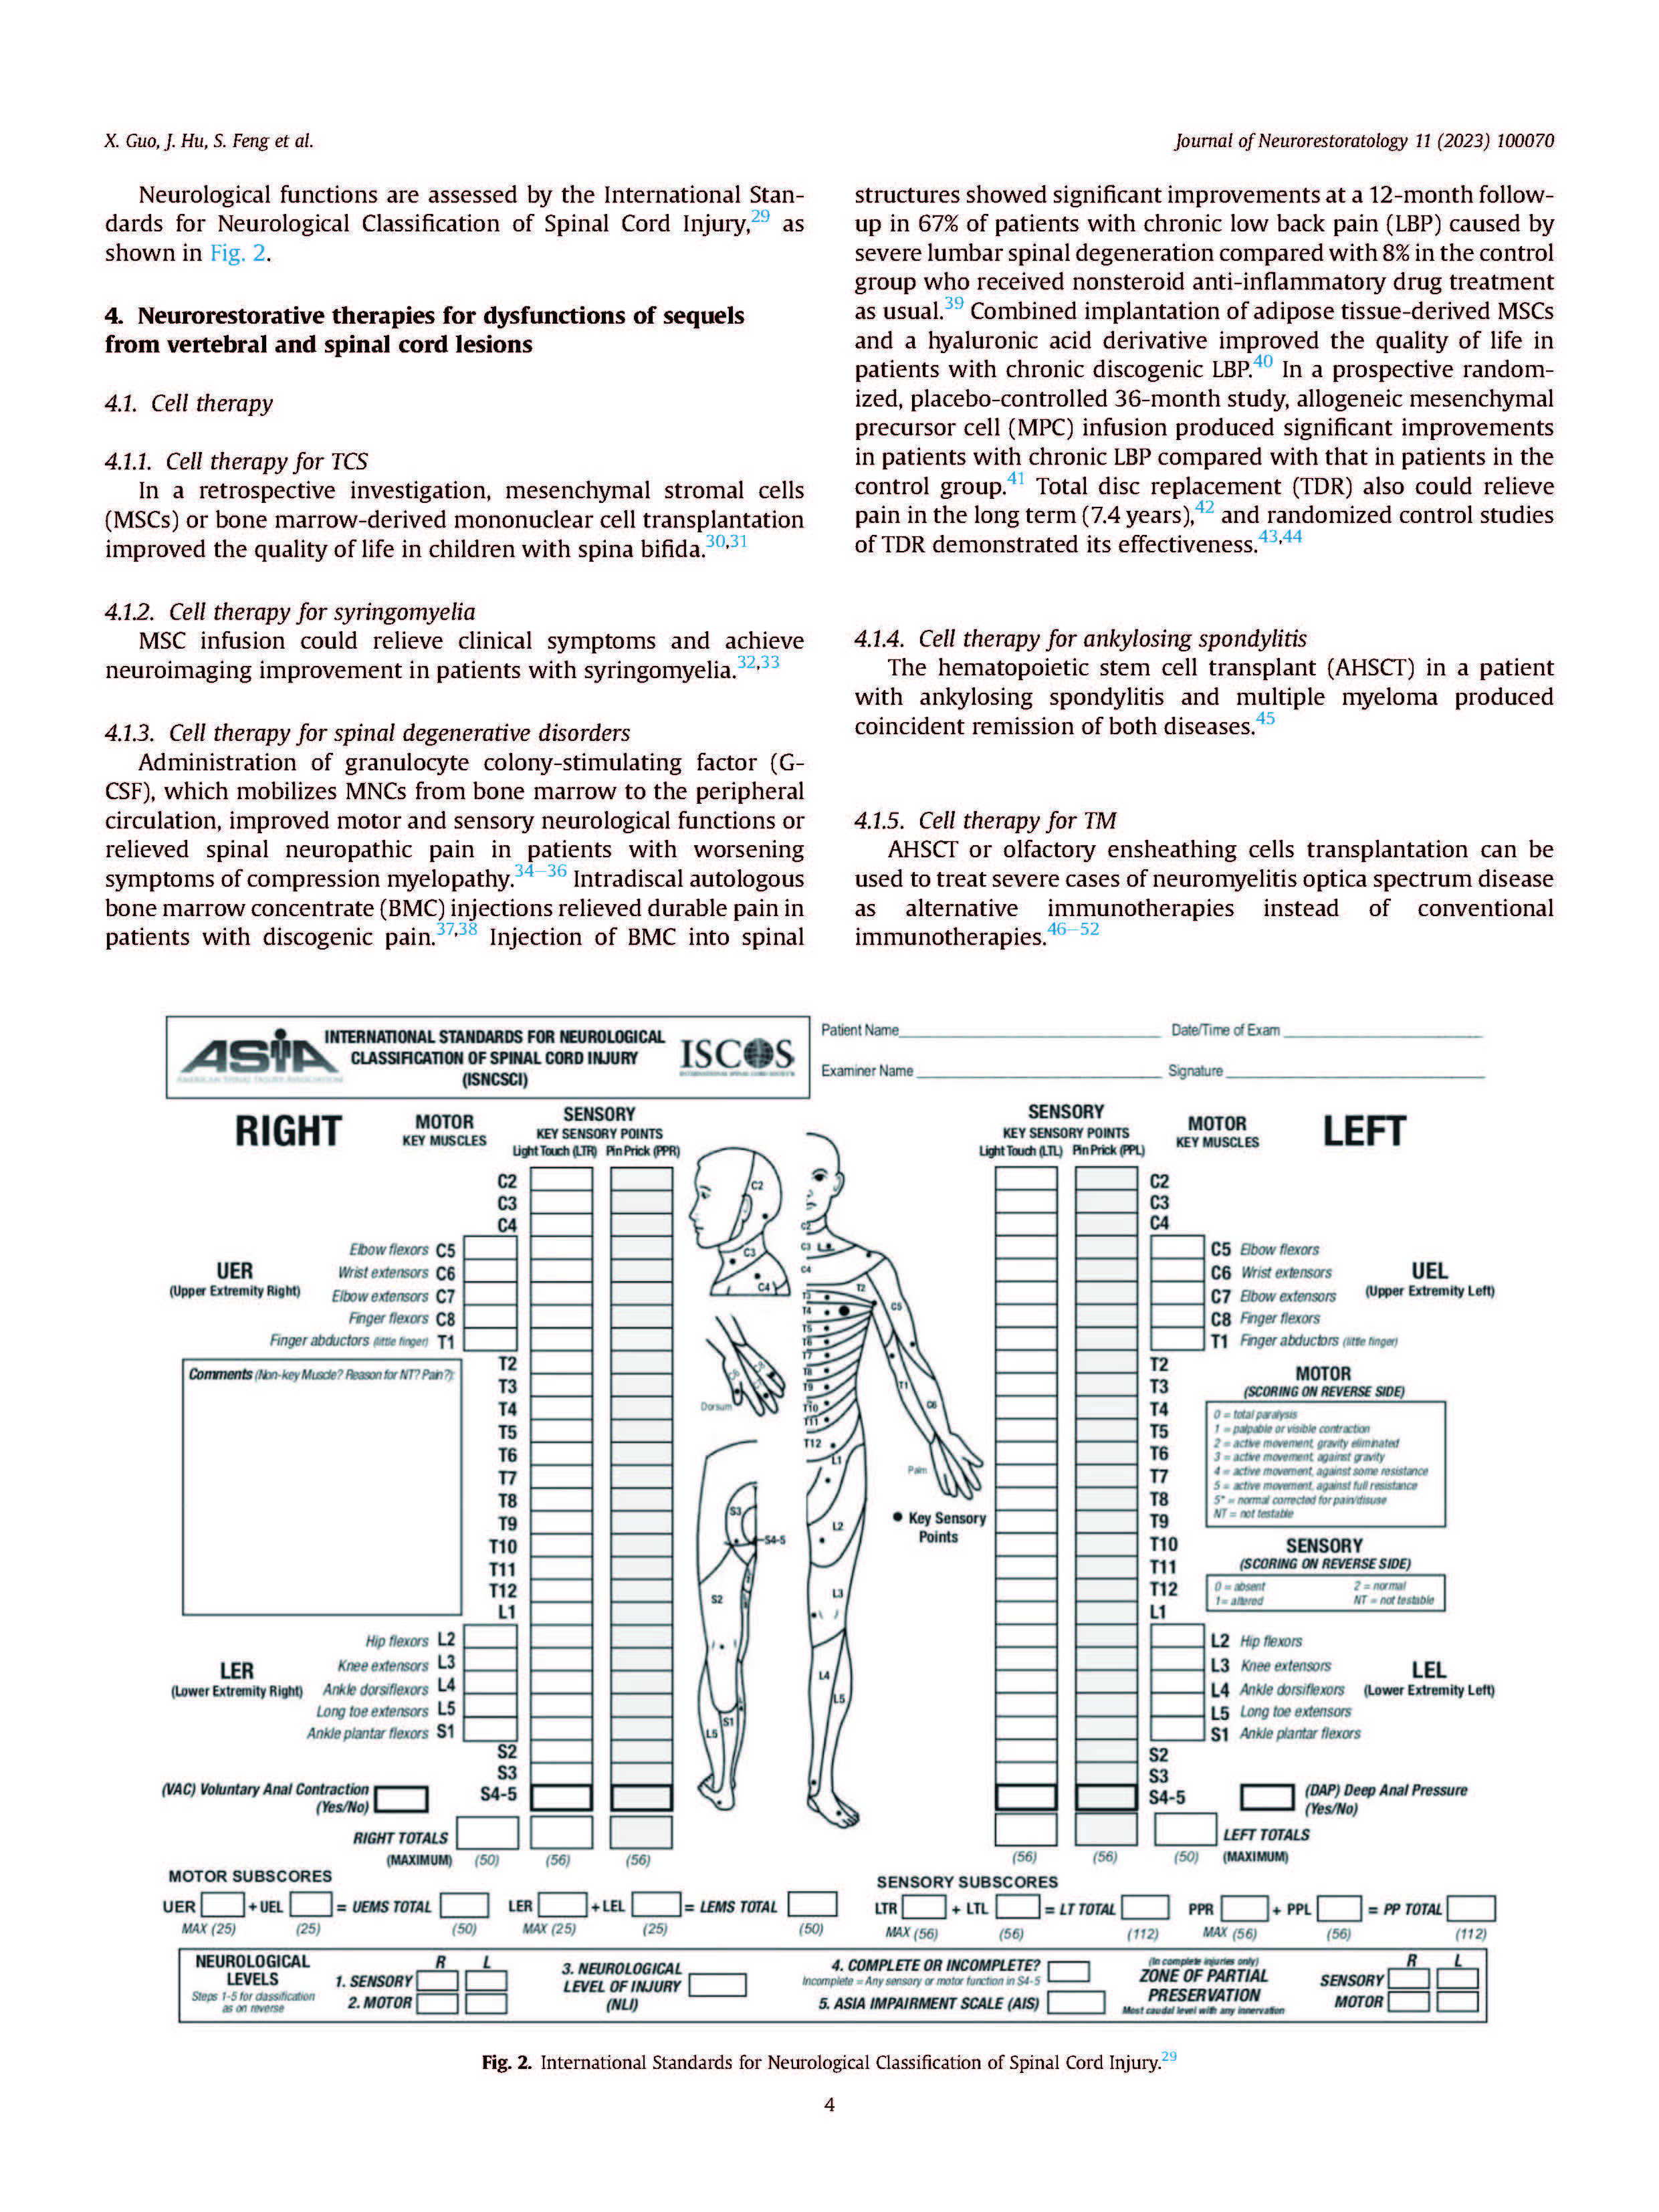 4-代表性学术论文Clinical neurorestorative treatment guidelines for neurological_页面_4.jpg